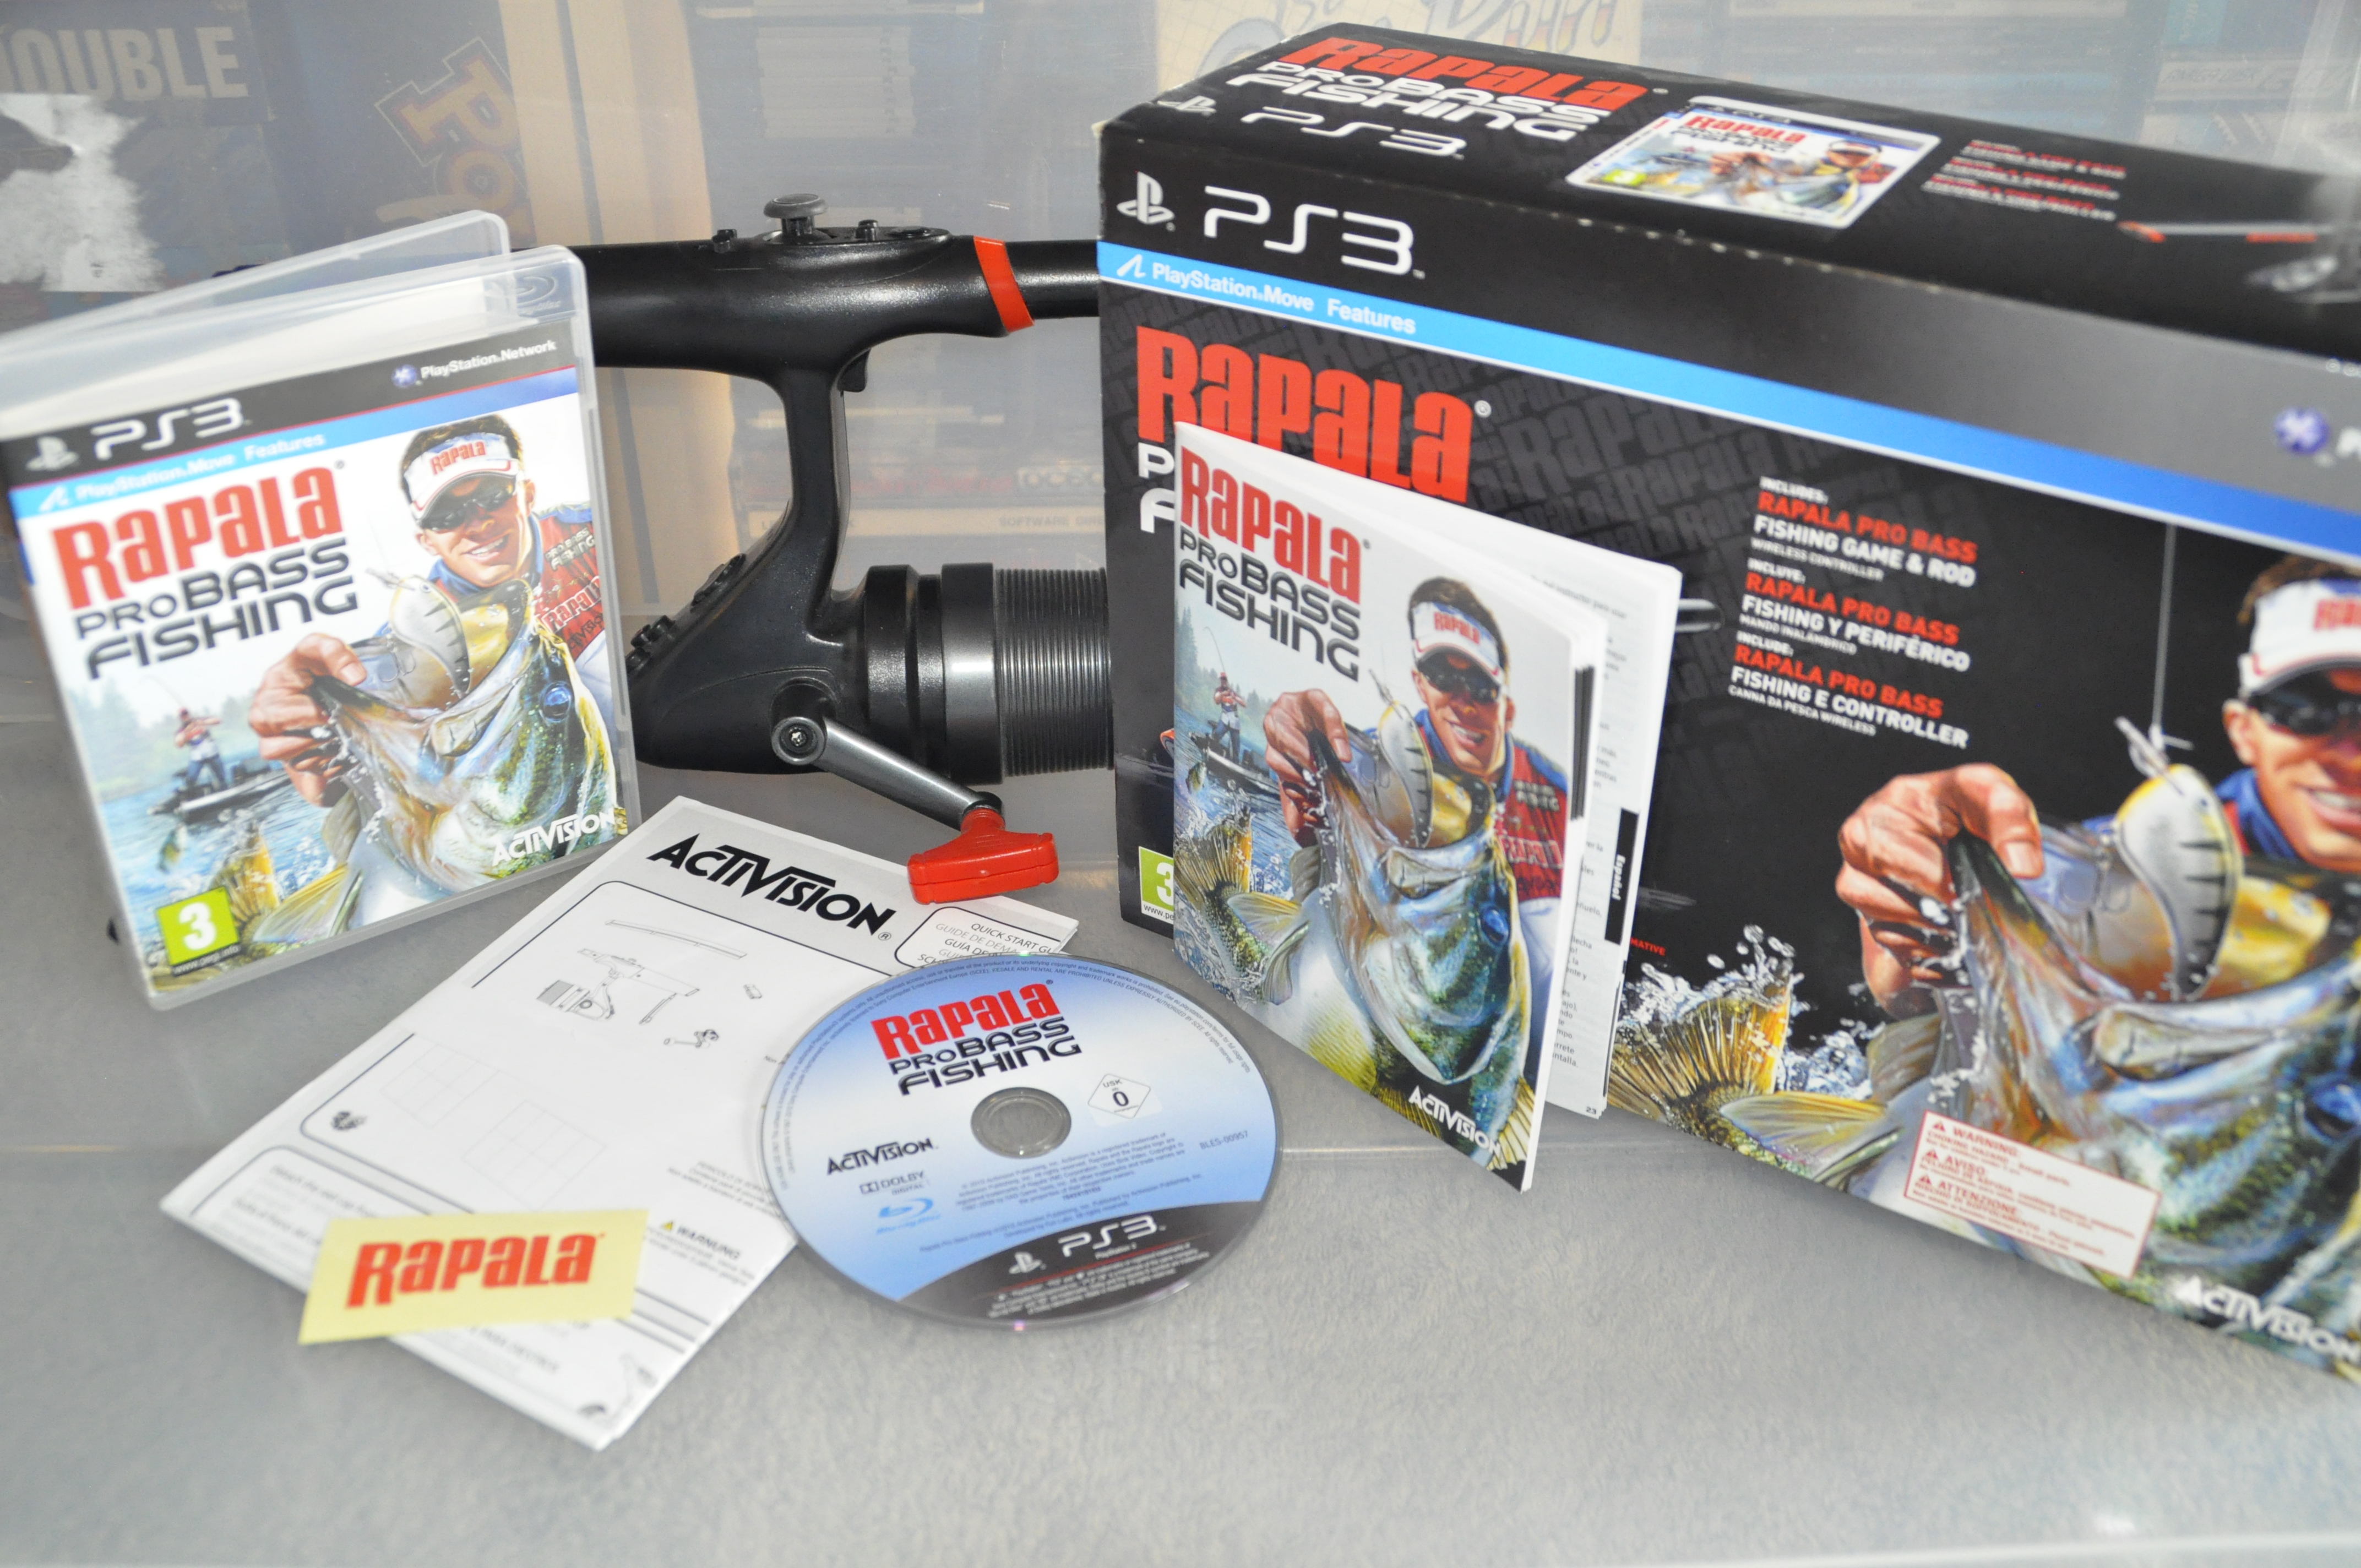 Accessory Bundles & Add Ons - PS3 - Rapala Pro Bass Fishing Game +